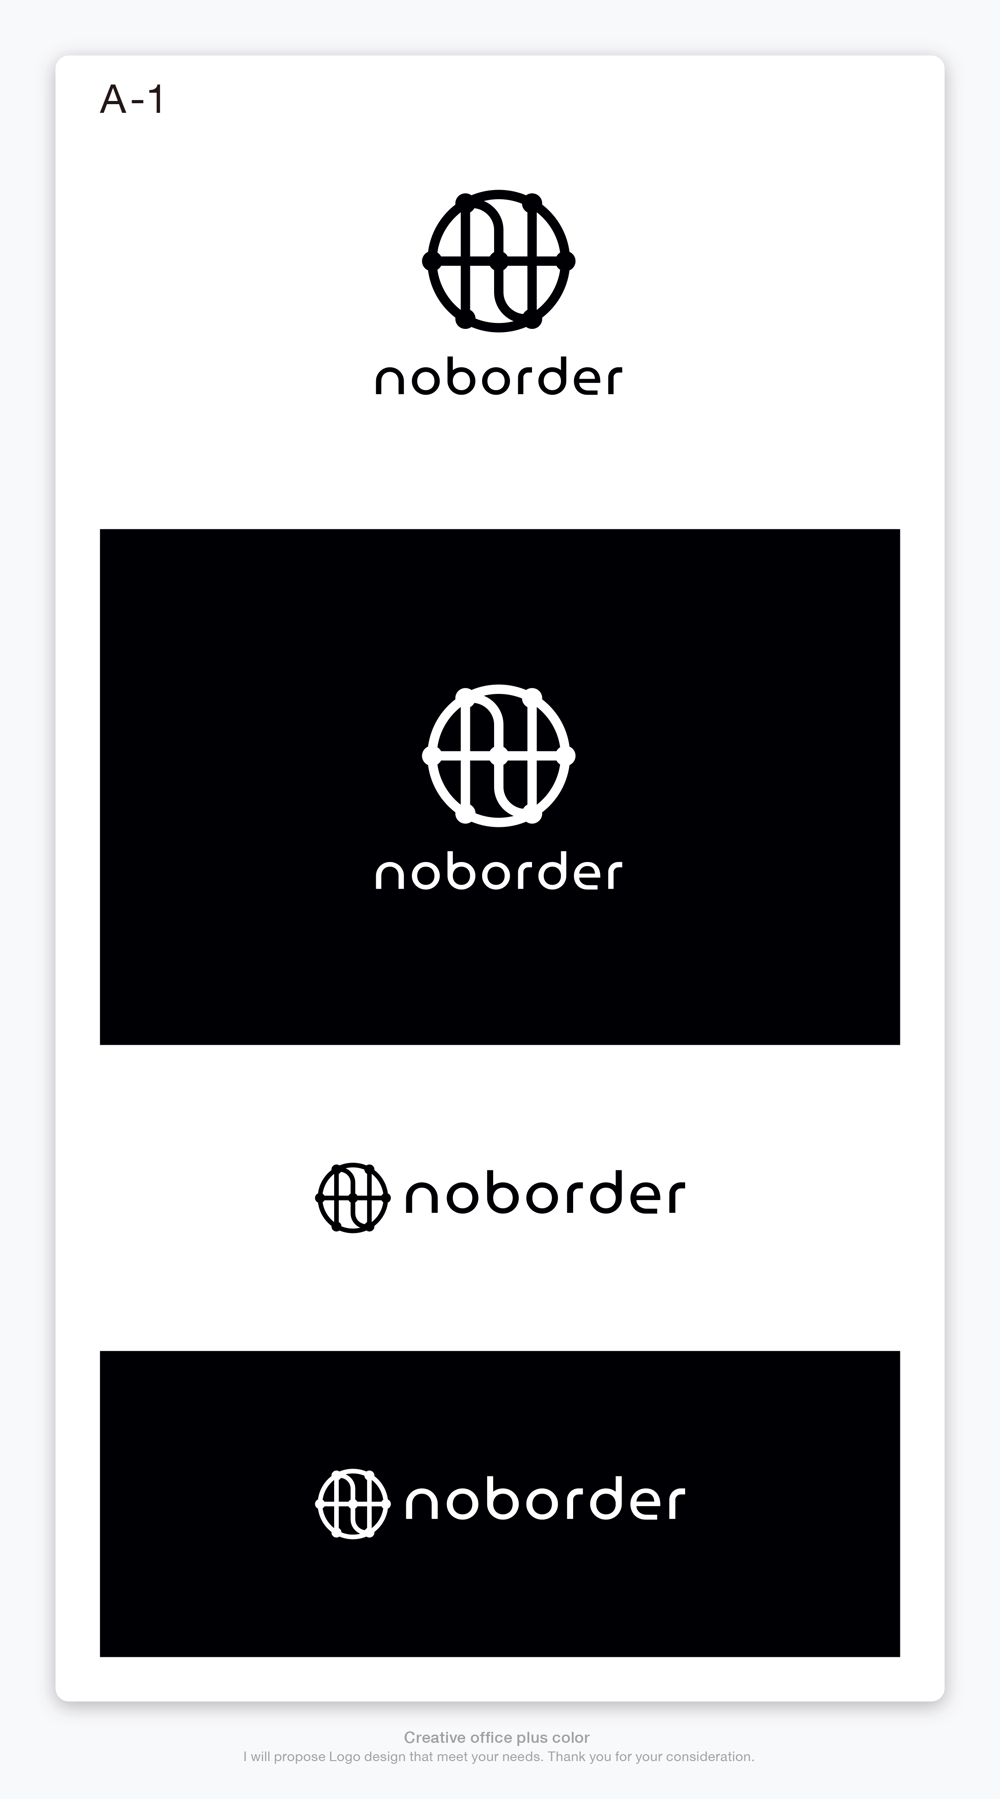 スタートアップ企業「Noborder」の自社コーポレートロゴ作成